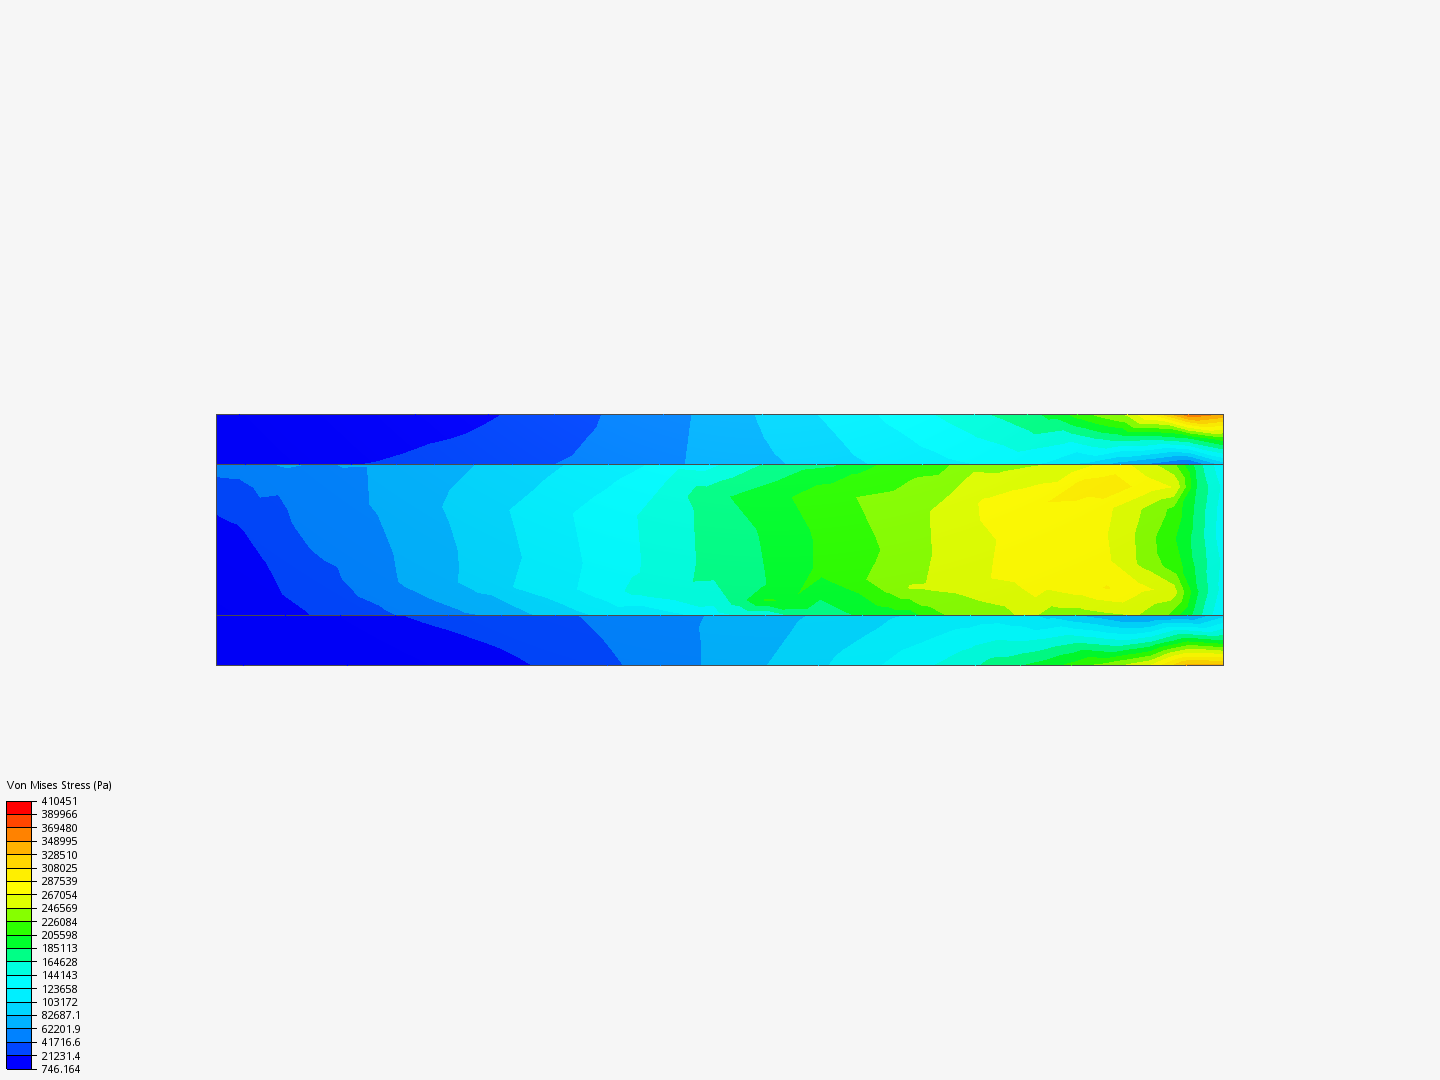 analysis of beam image